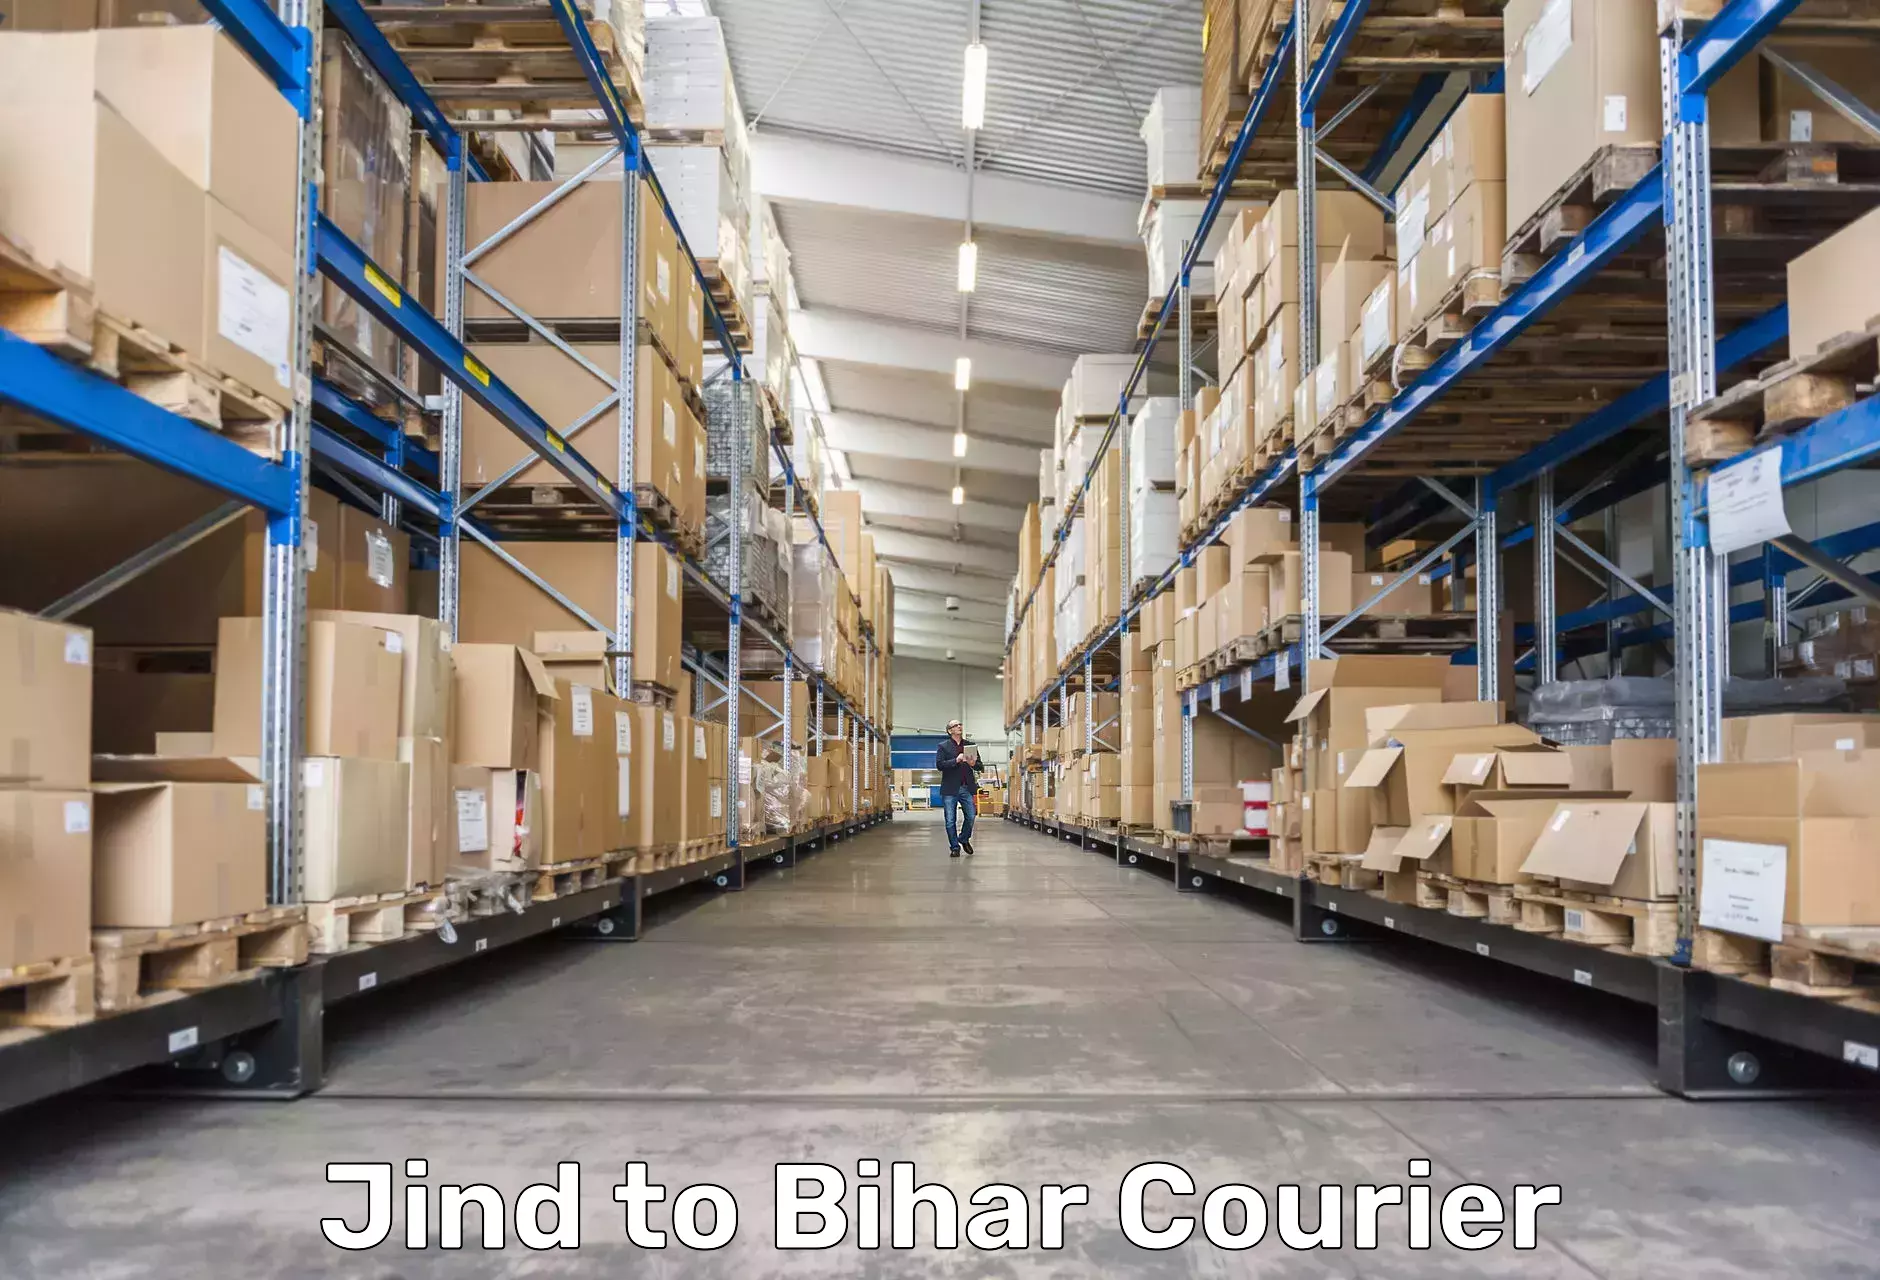 Parcel handling and care Jind to Bihar